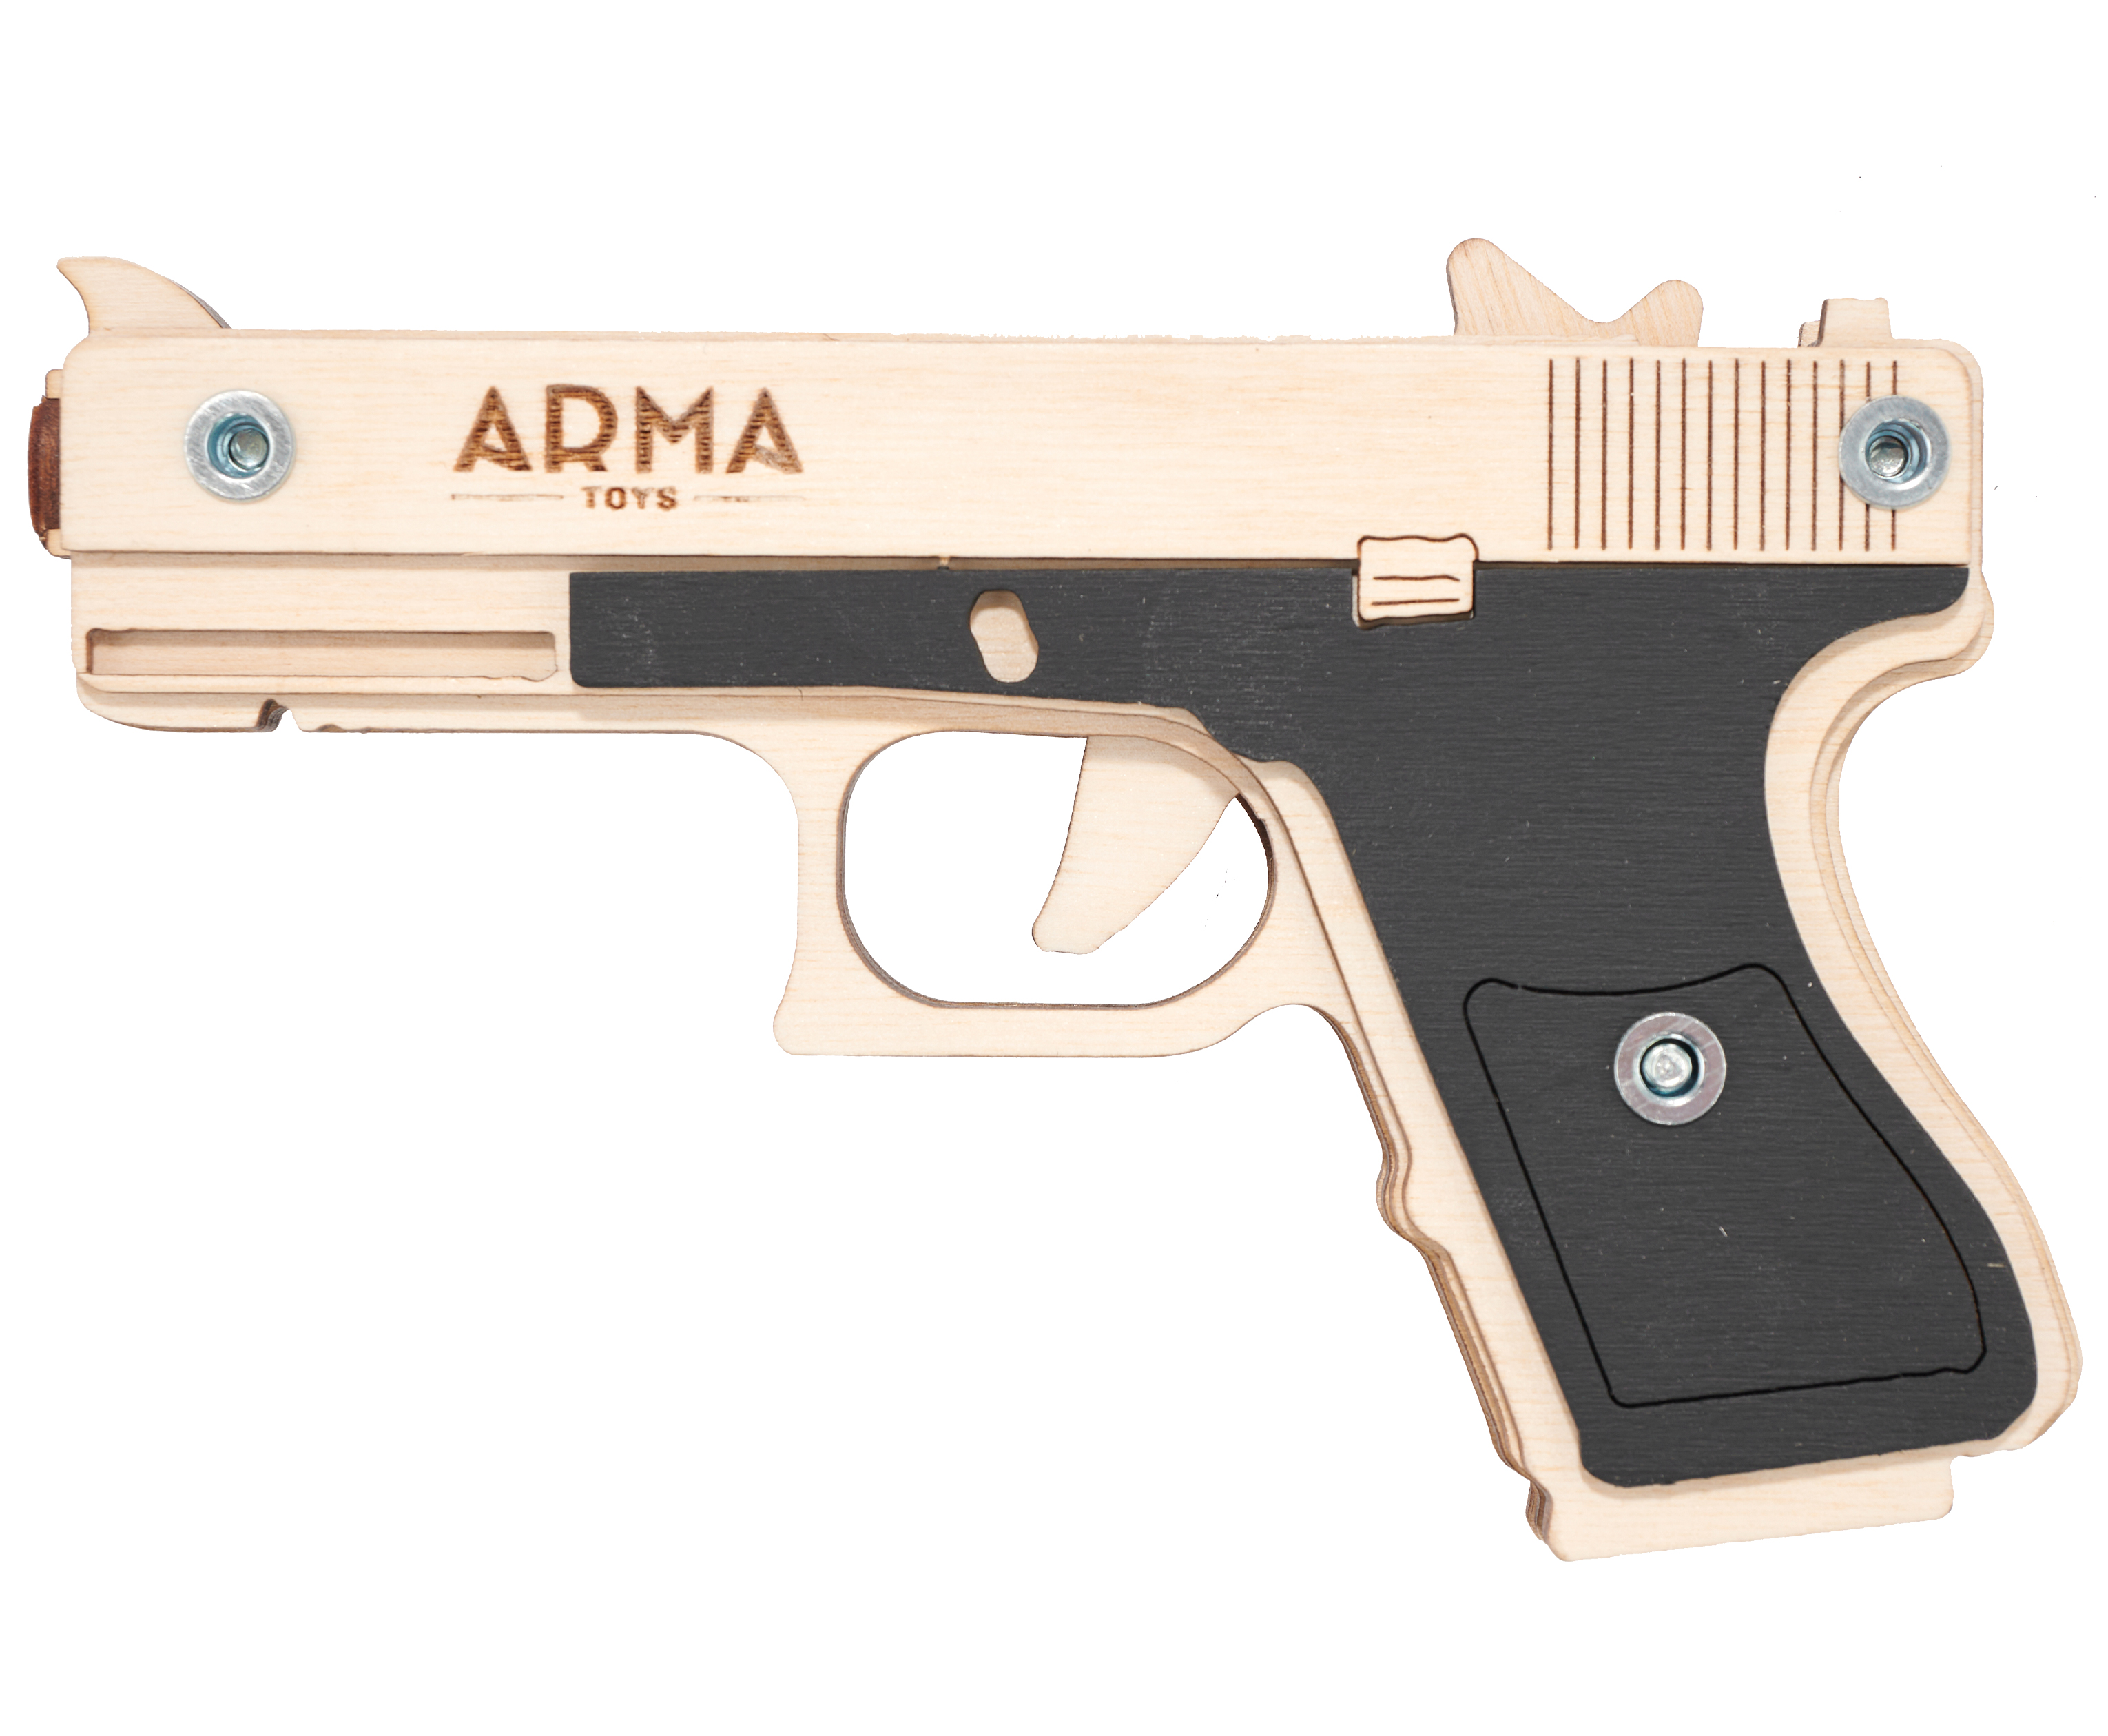 Резинкострел игрушечный Arma toys пистолет Glock Light макет, Глок 26, AT027, окрашенный резинкострел arma toys пистолет стечкина макет апс at009k окрашенный